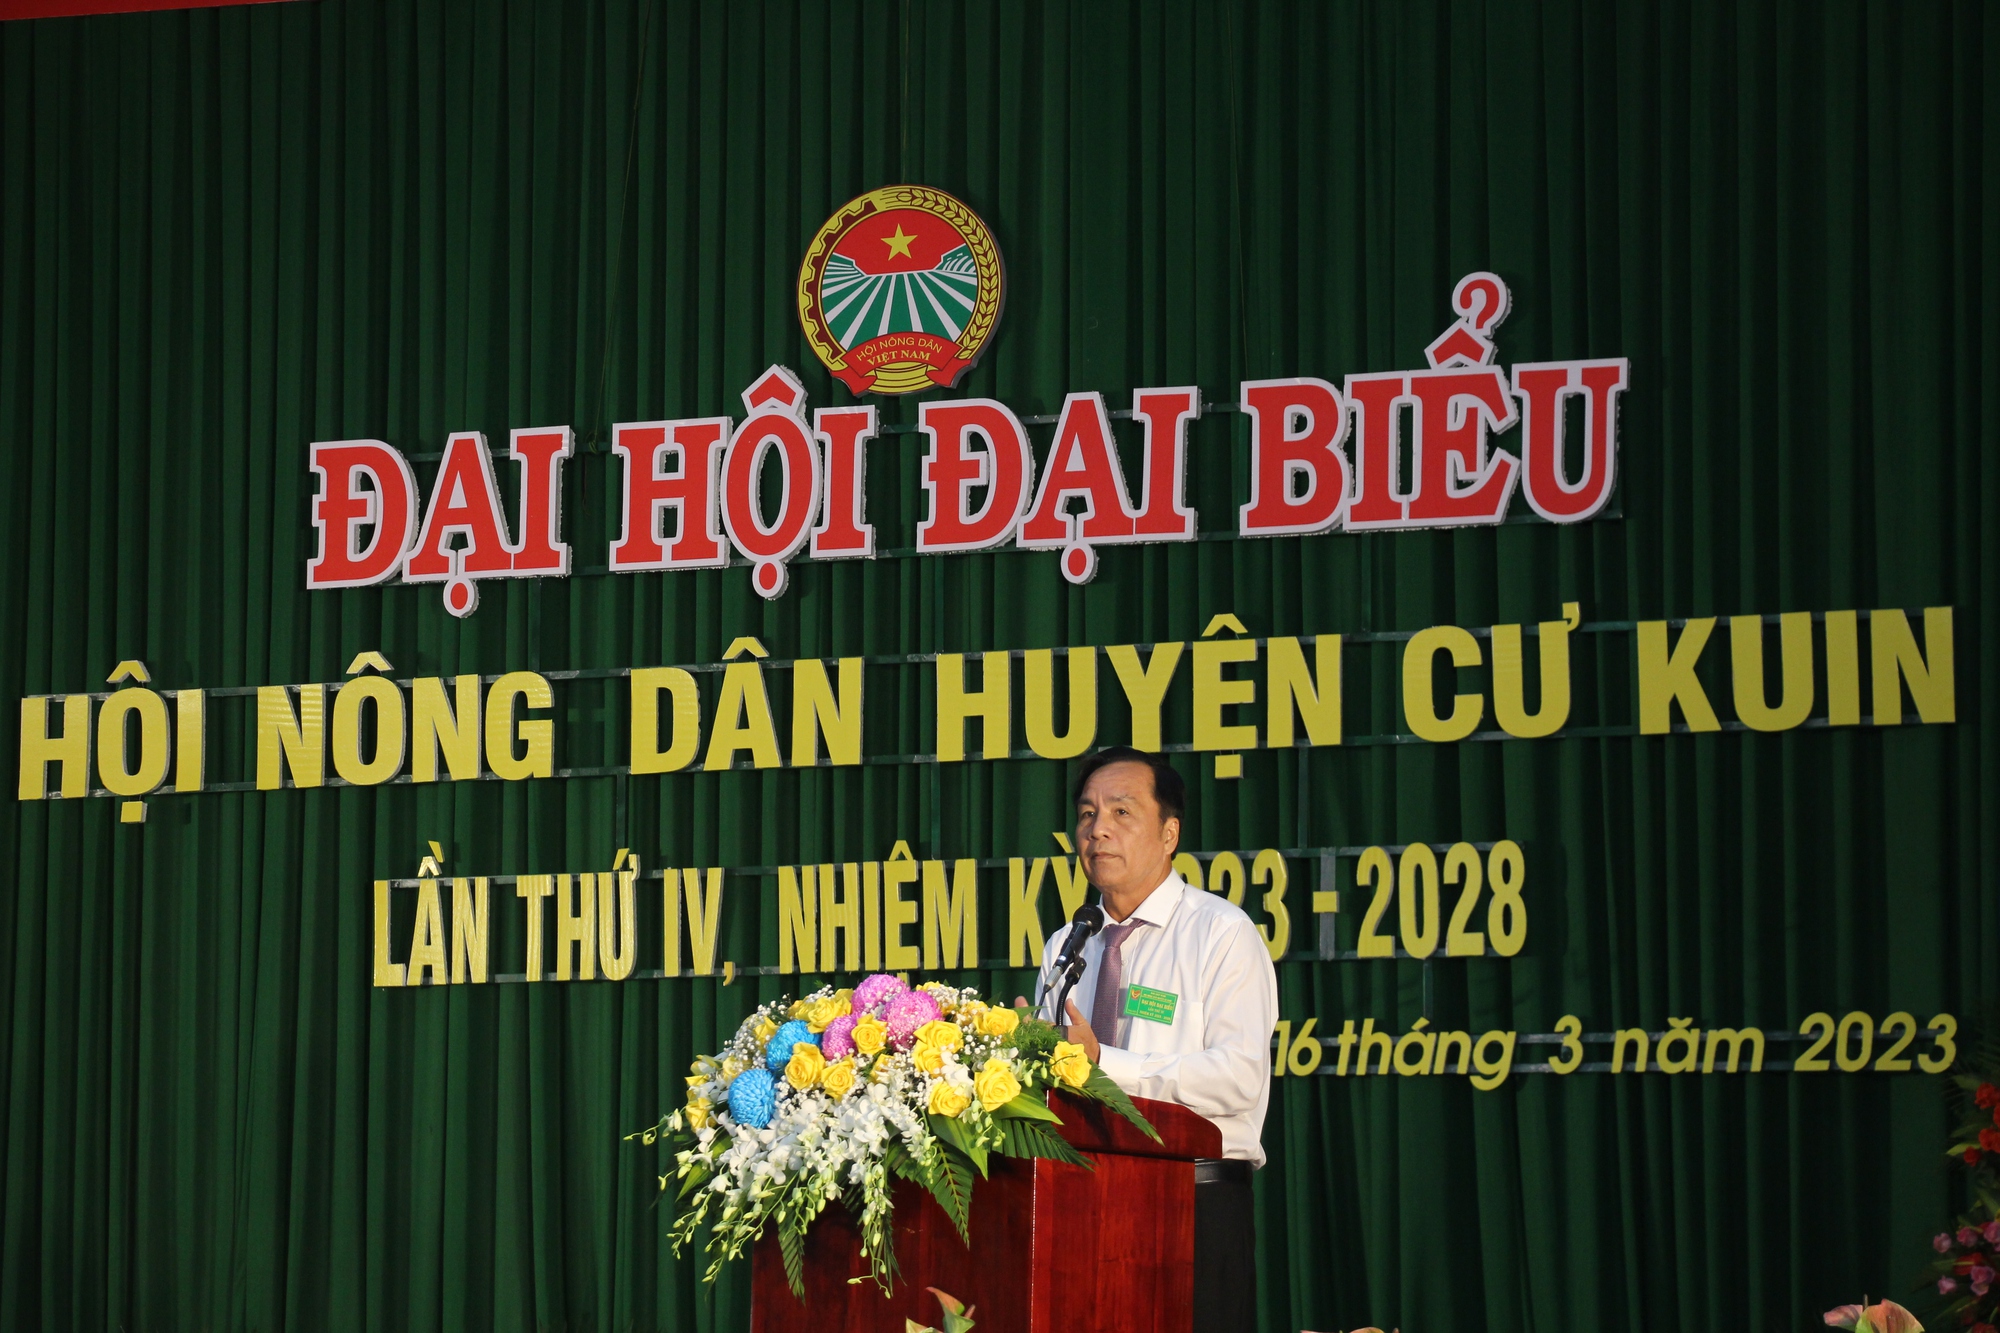 Phó Chủ tịch Hội Nông dân Việt Nam Đinh Khắc Đính dự Đại hội điểm cấp huyện đầu tiên trên cả nước - Ảnh 4.